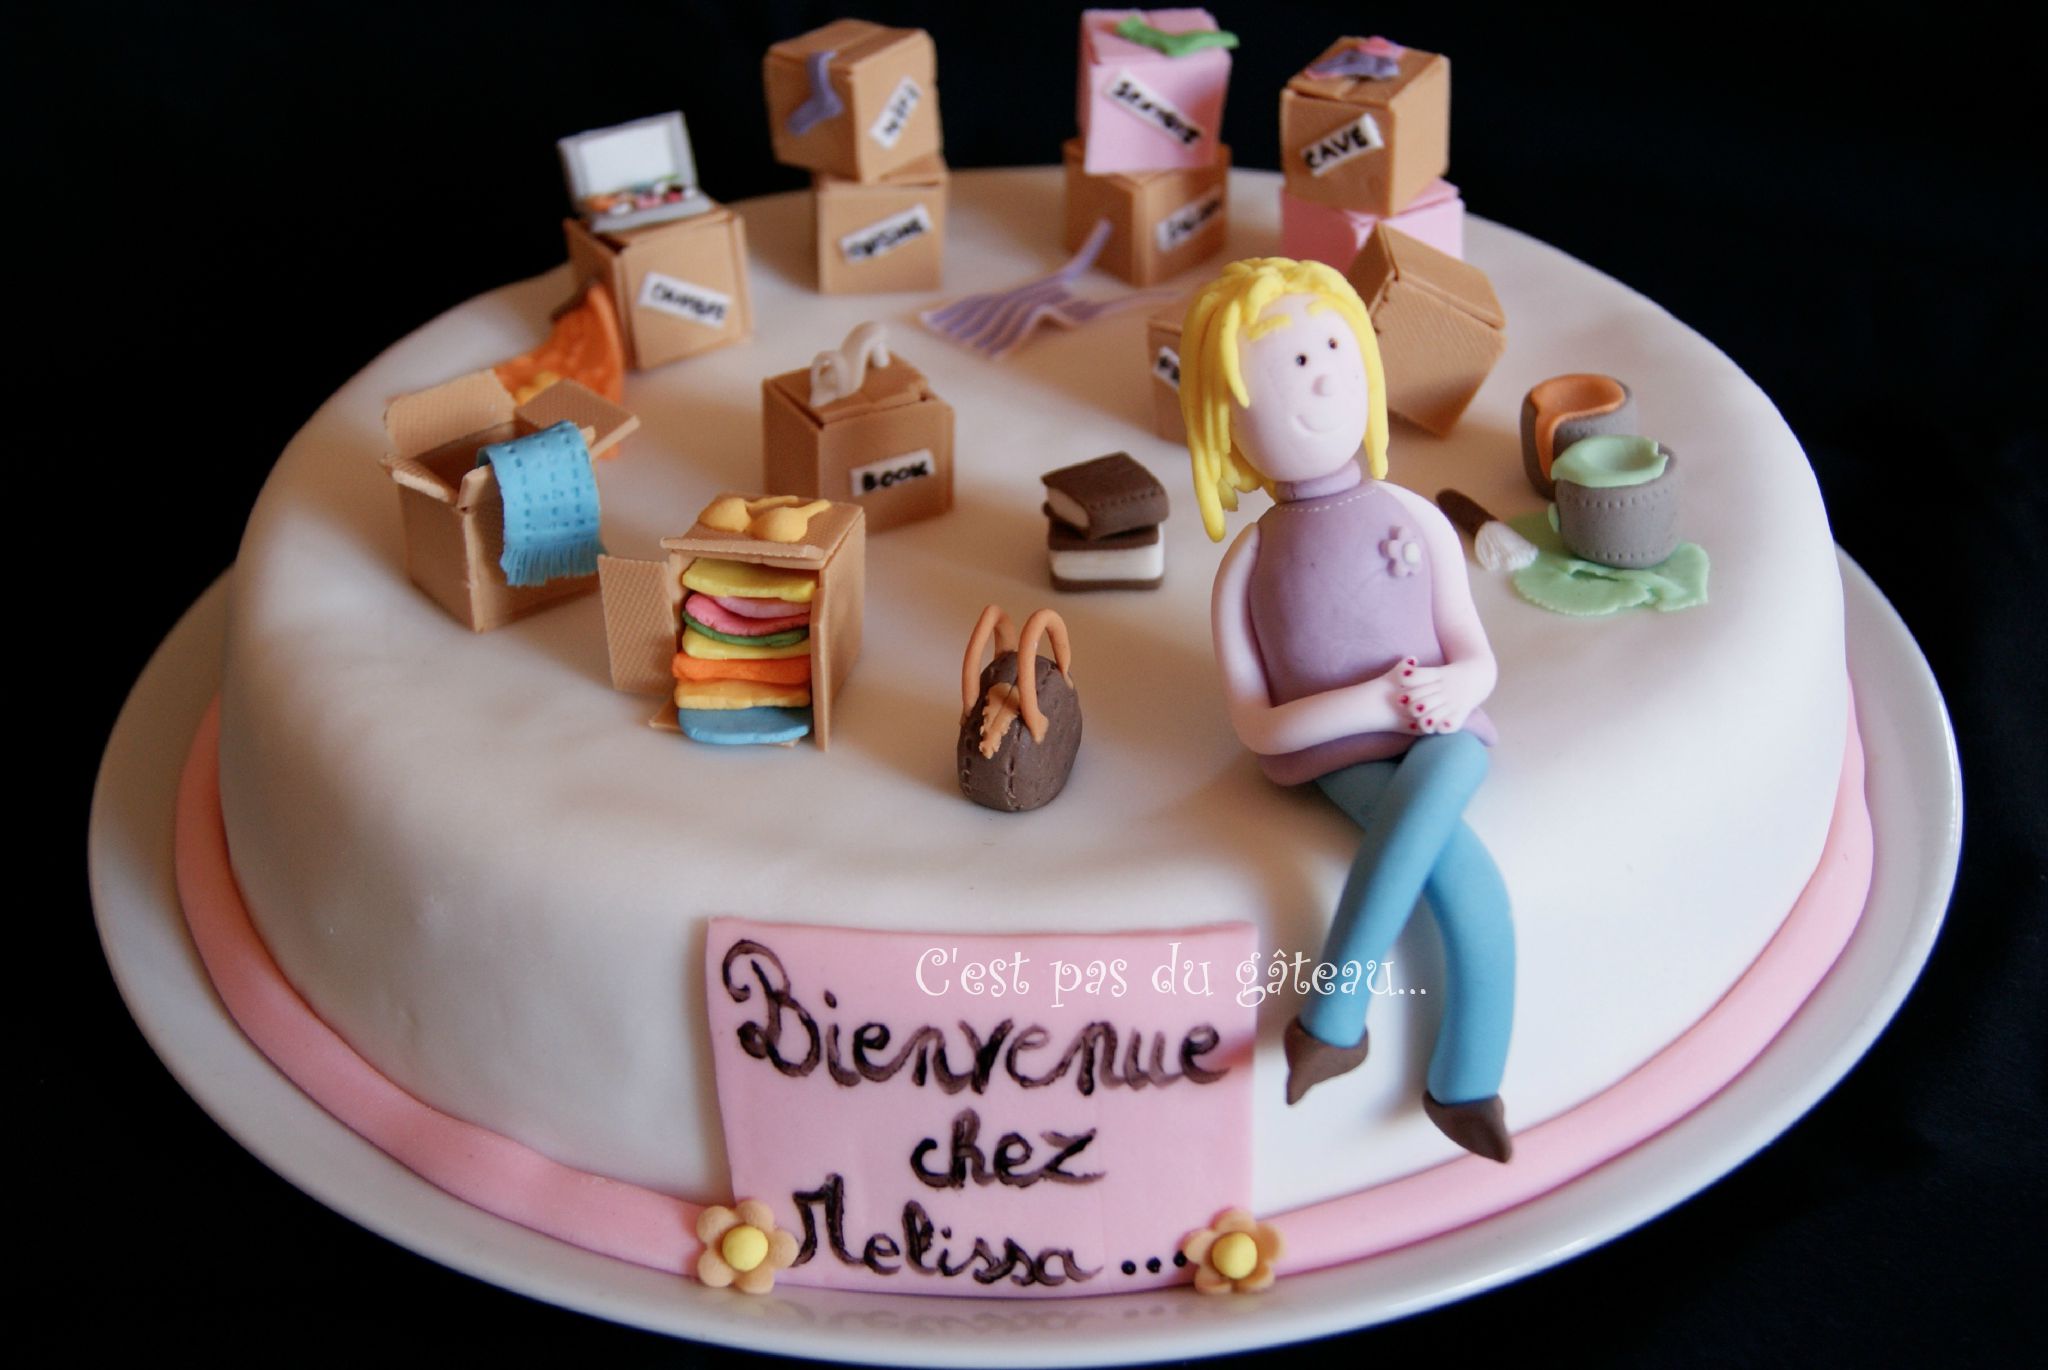 Gateau Pendaison Cremaillere Photo De Wedding Cakes Cakes C Est Pas Du Gateau